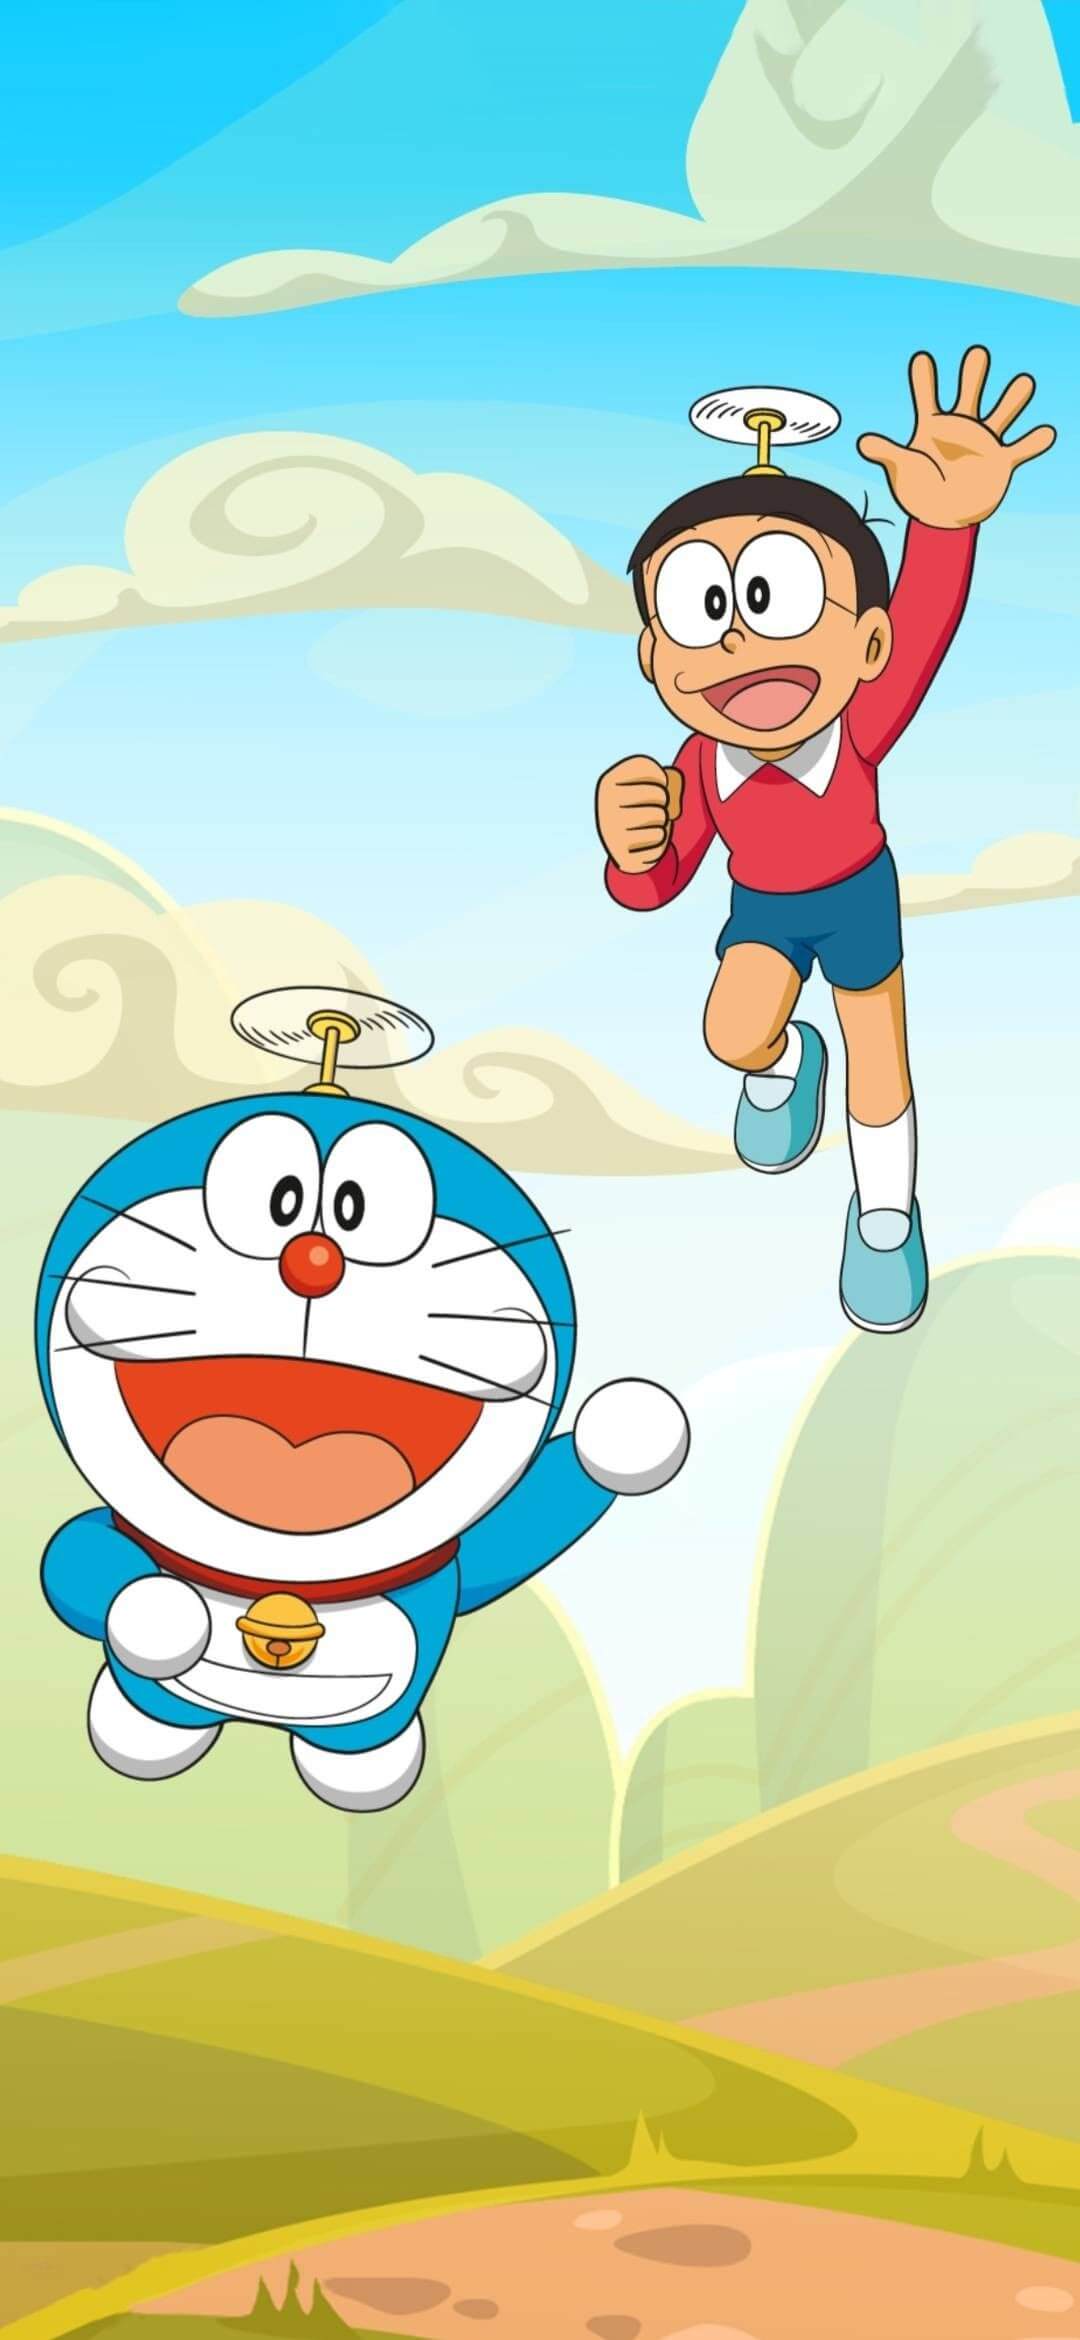 Nobita luôn là một trong những nhân vật yêu thích trong Doraemon. Bức ảnh đẹp cute của anh chàng đang chờ bạn khám phá để cùng nhau thưởng thức.